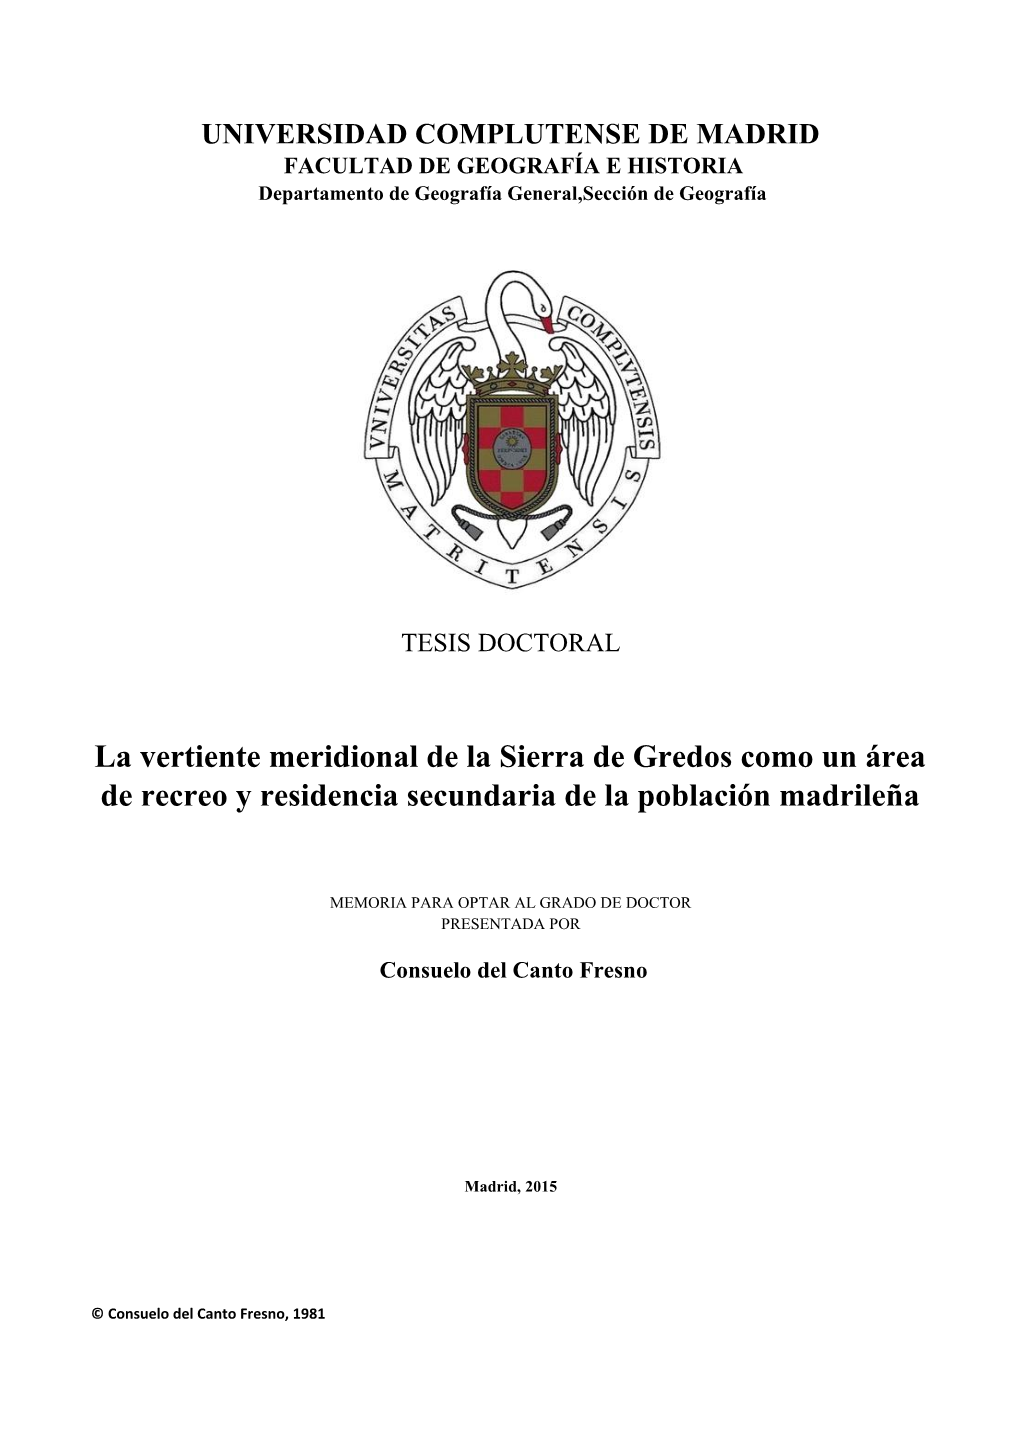 La Vertiente Meridional De La Sierra De Gredos Como Un Área De Recreo Y Residencia Secundaria De La Población Madrileña